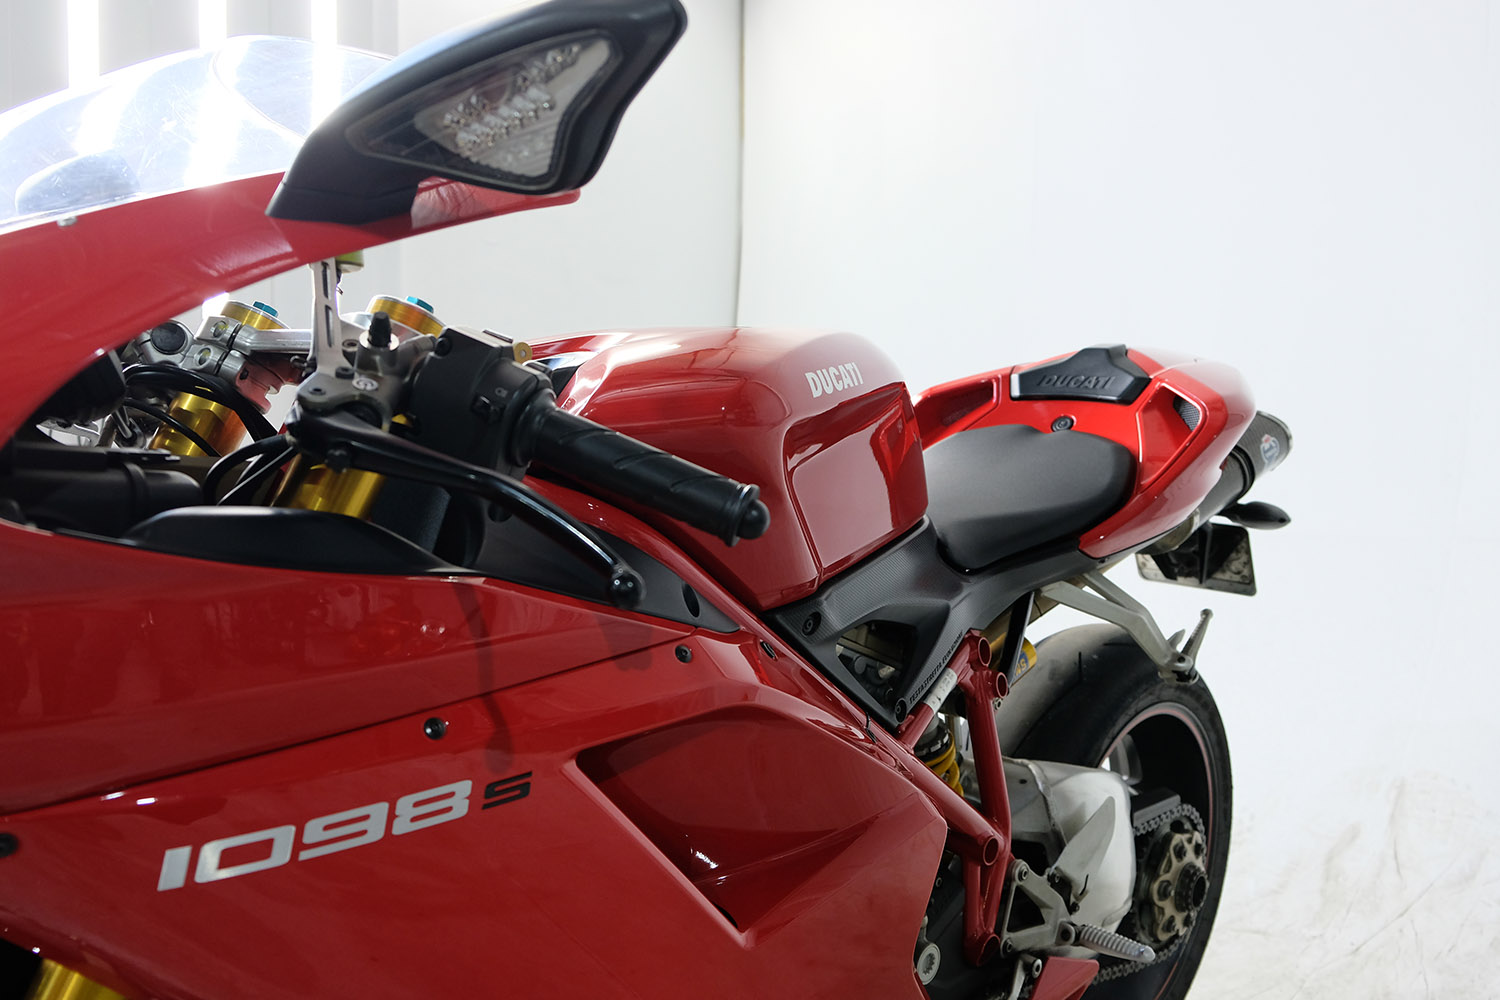 2008 Ducati 1098S_0014_DSCF2502.jpg